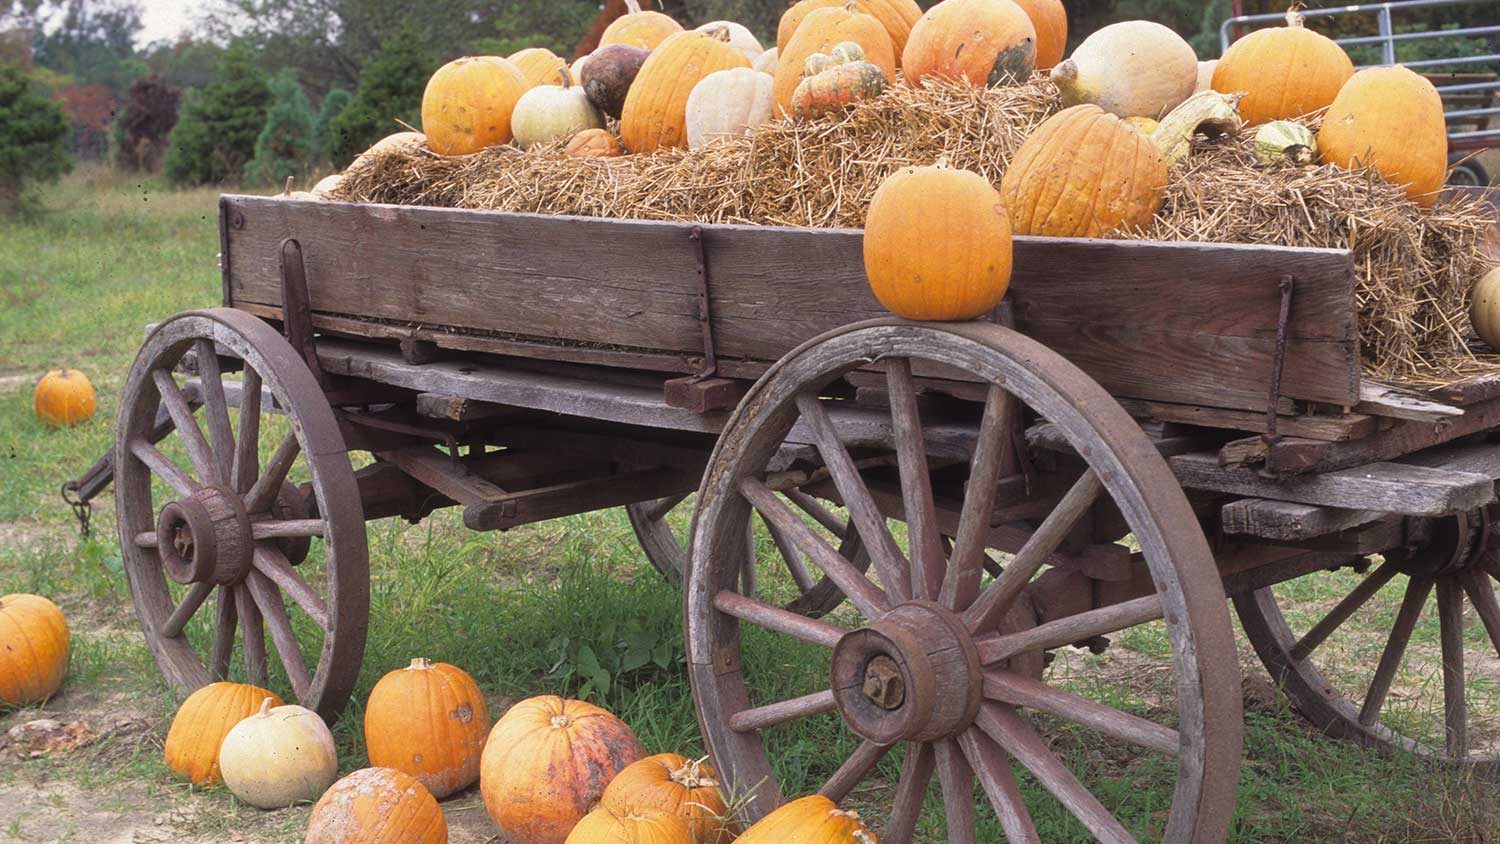 Pumpkins decorating a wagon.